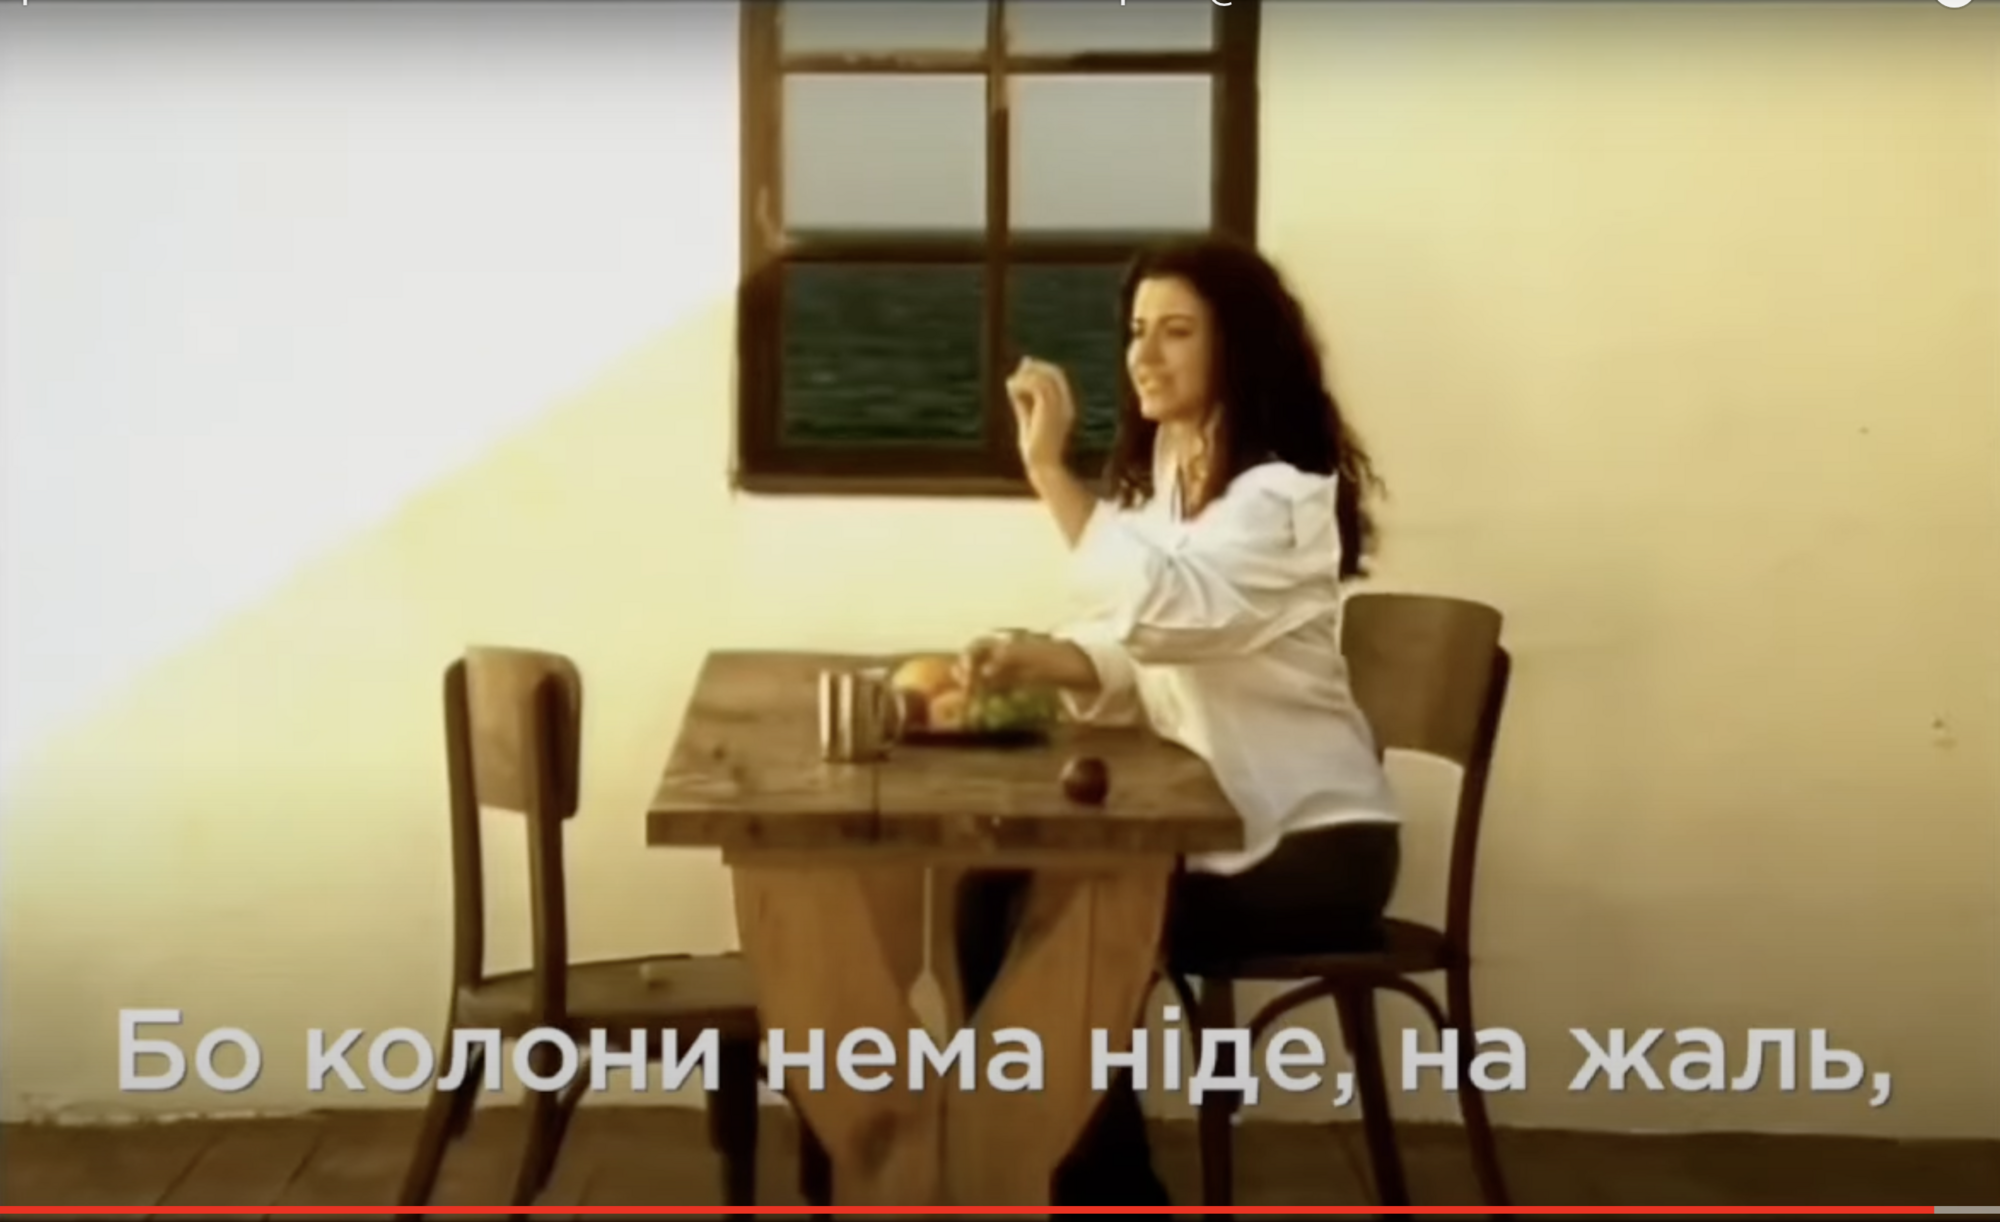 Патриотическая версия песни Ани Лорак "Полуднева спека" порвала сеть: предательницу Украины назвали тайной агенткой